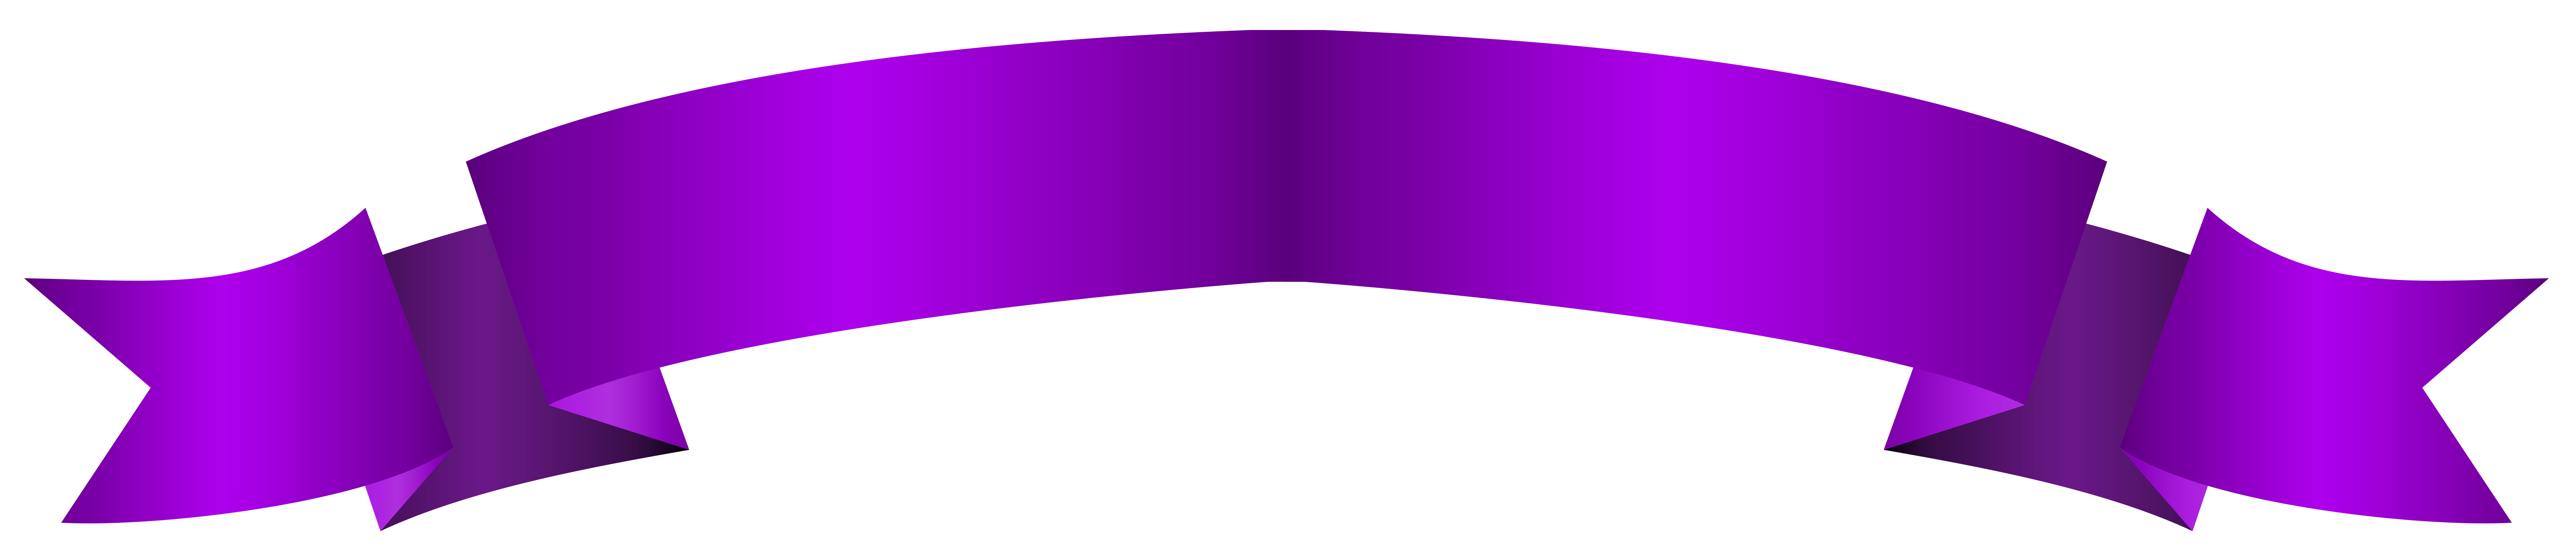 Violette banner PNG Foto